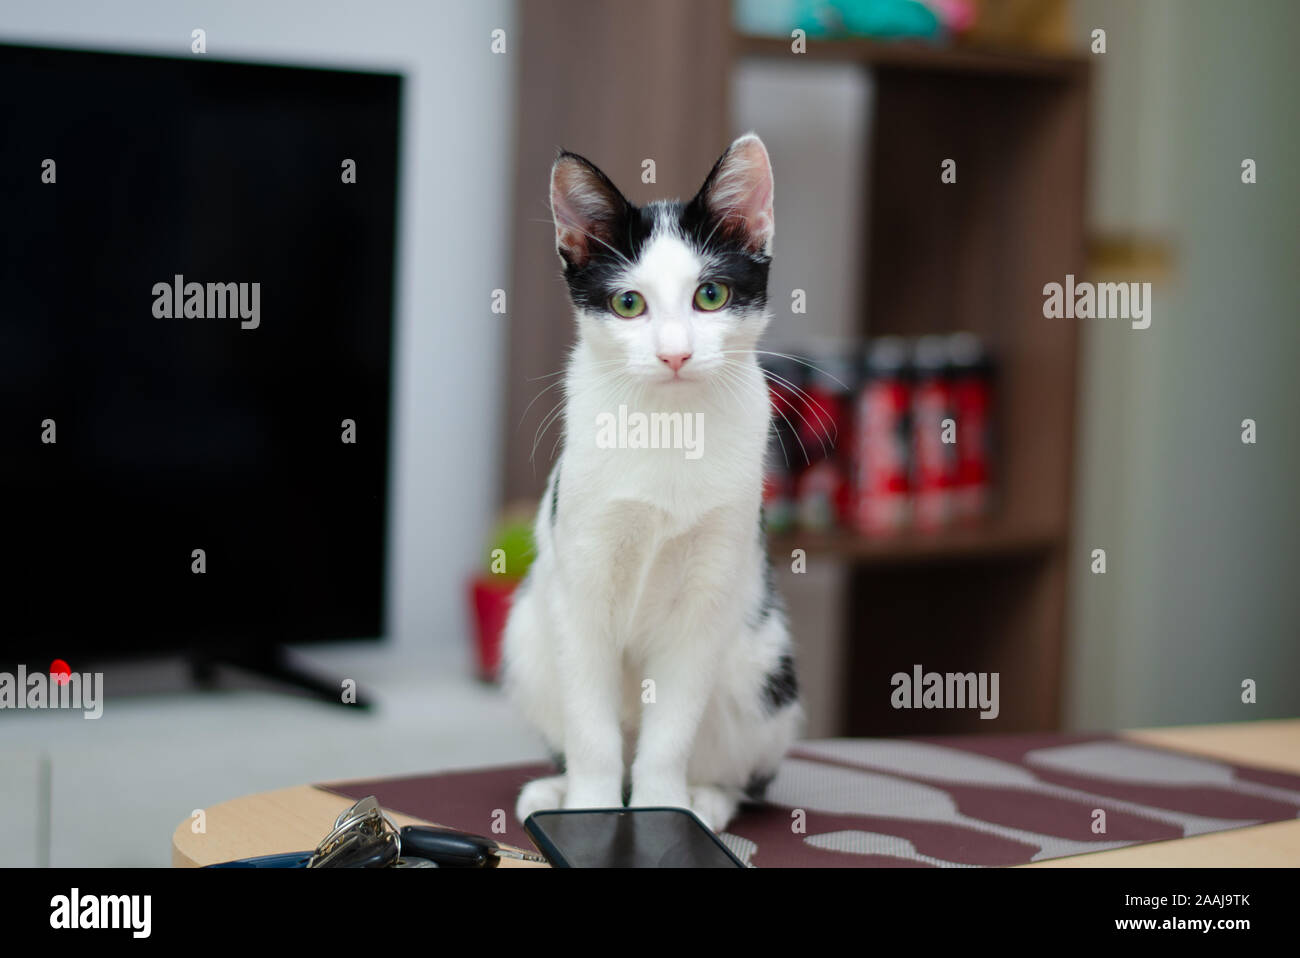 Kitten on the table Stock Photo